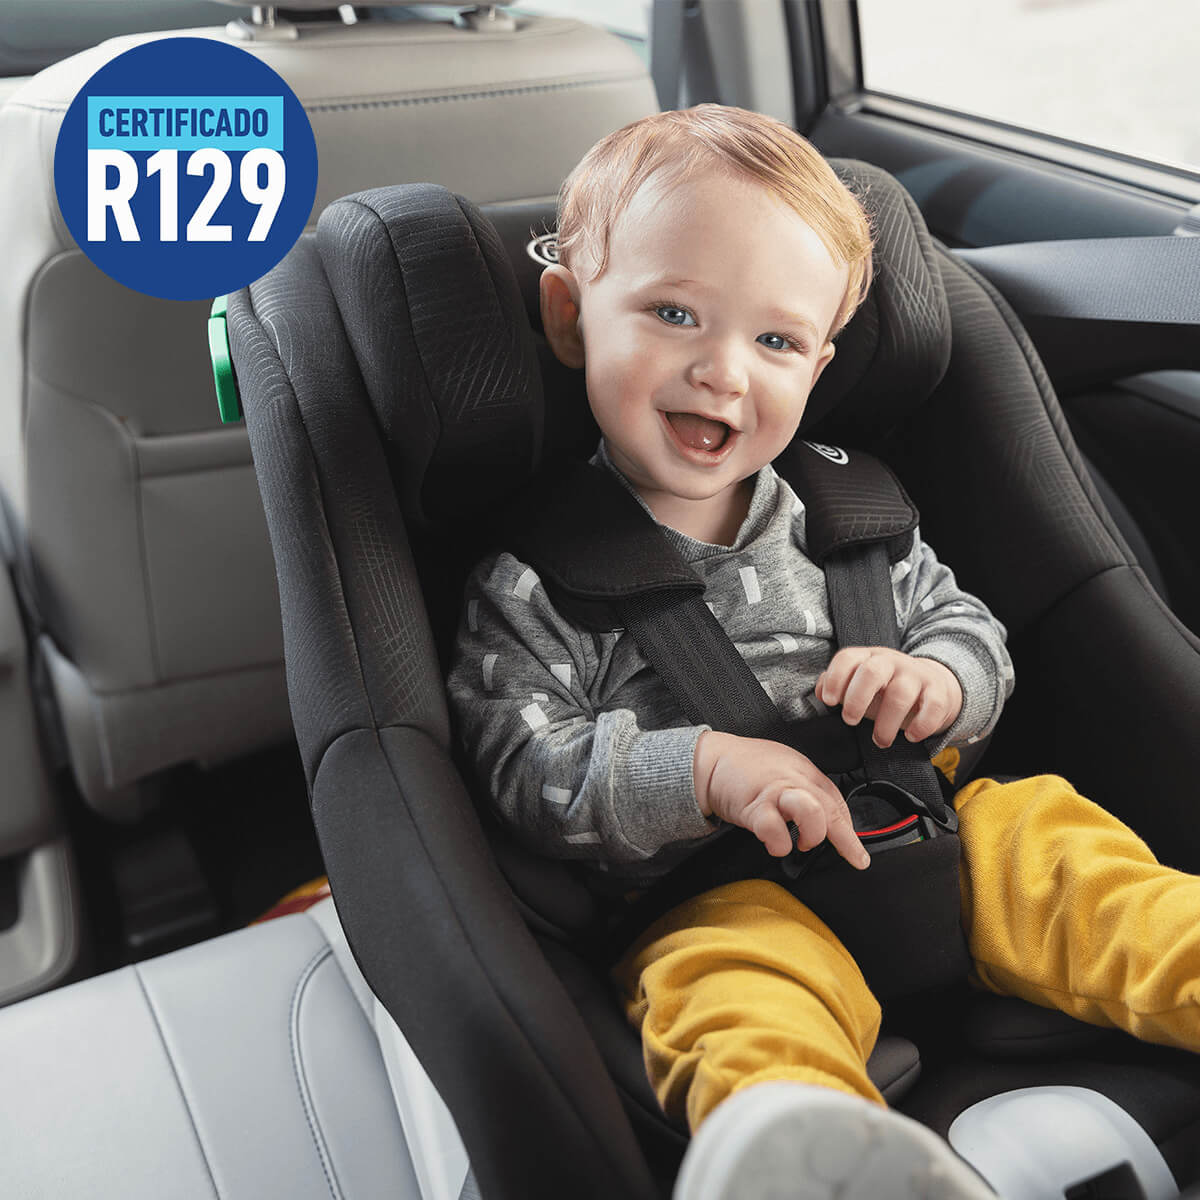 Bebé sonriente en Graco Extend LX R129 en automóvil con logotipo certificado R129.

